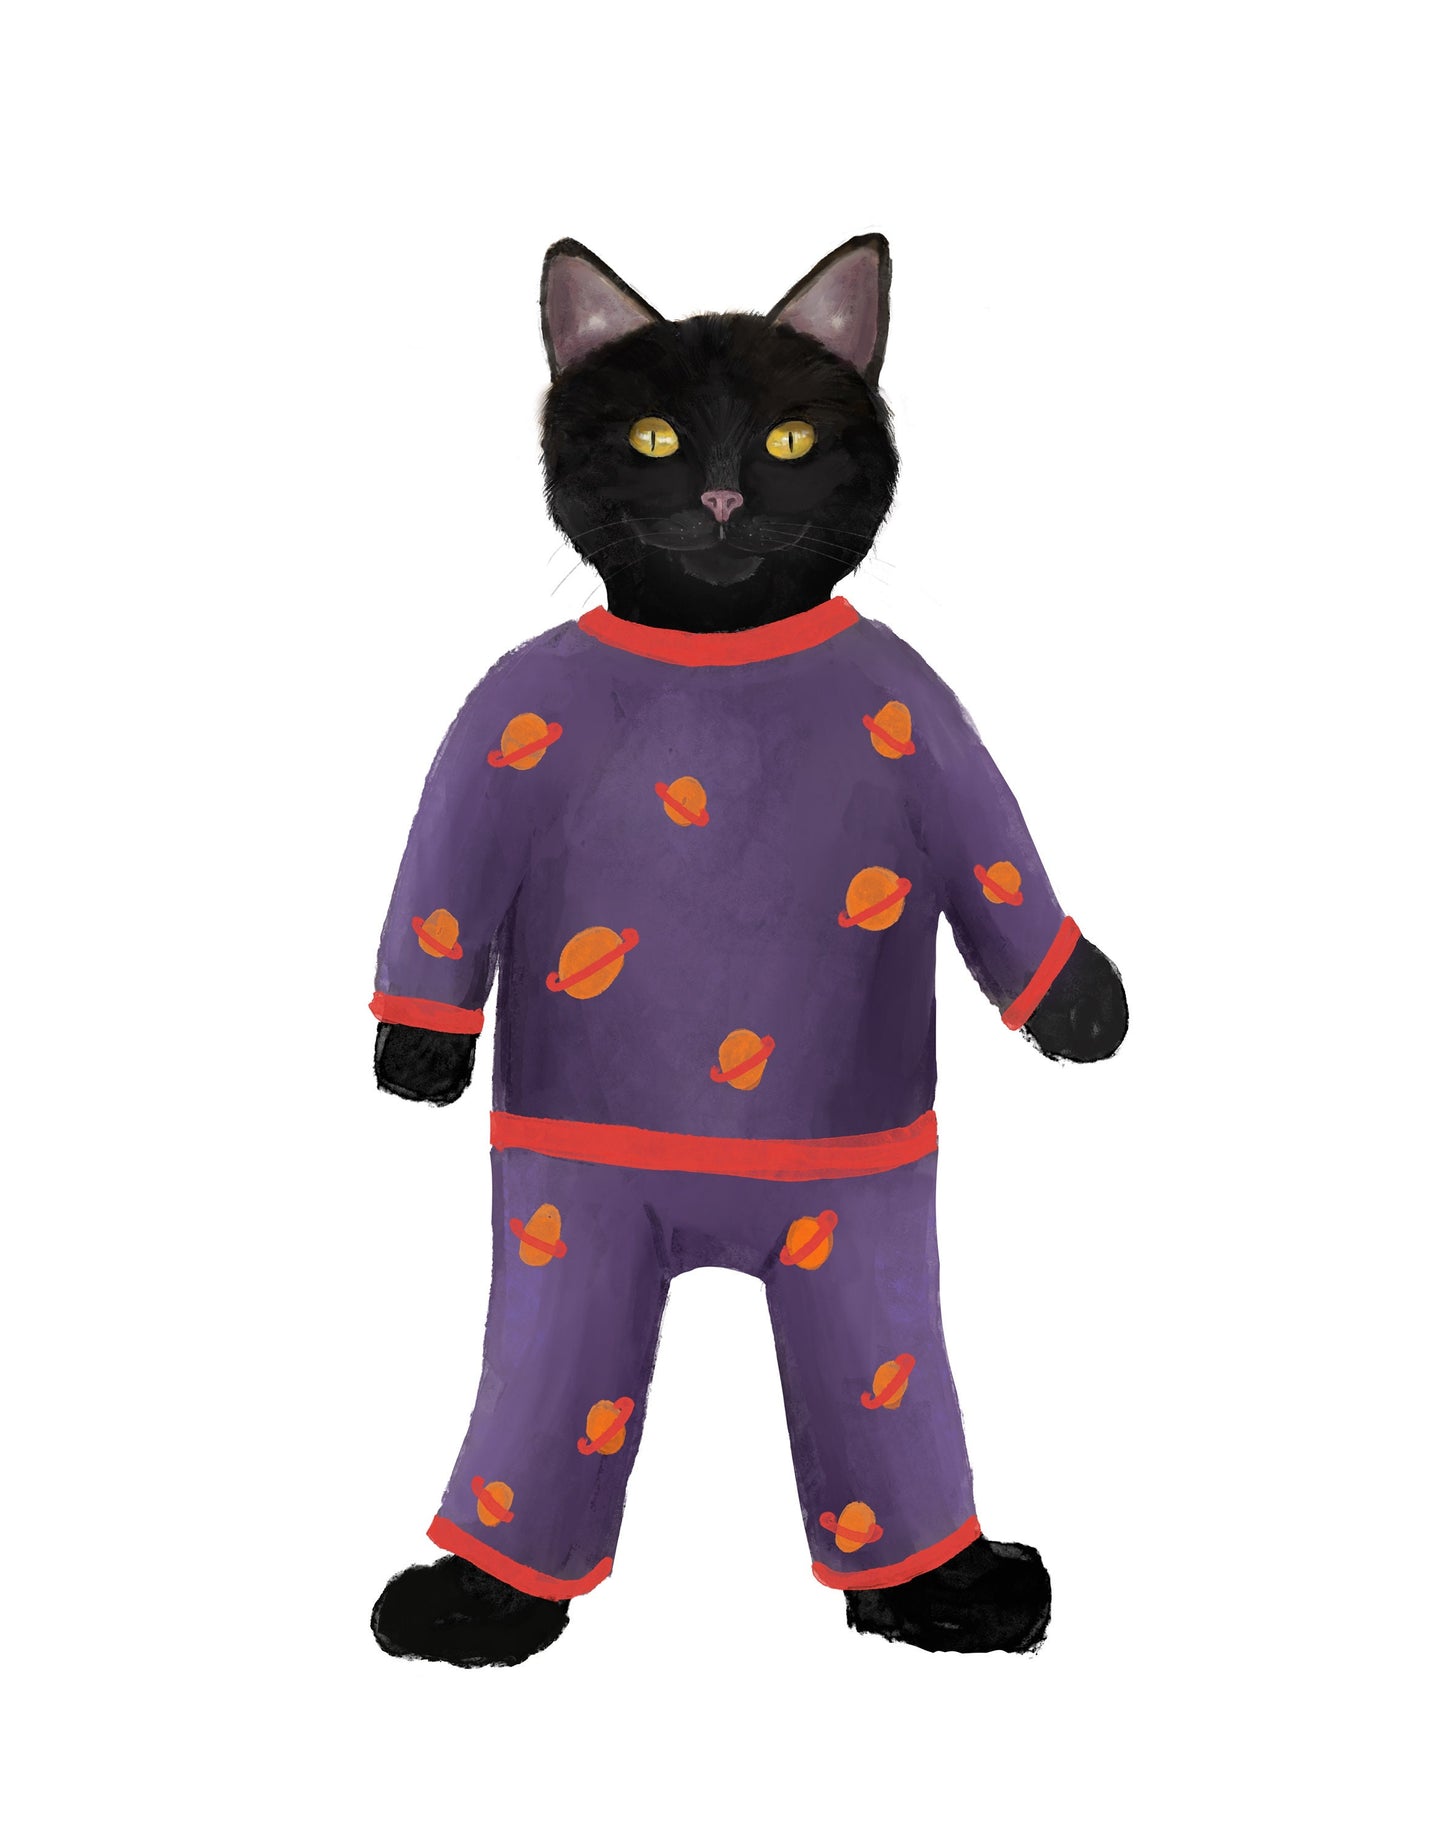 Black Cat Wearing Pajamas Print